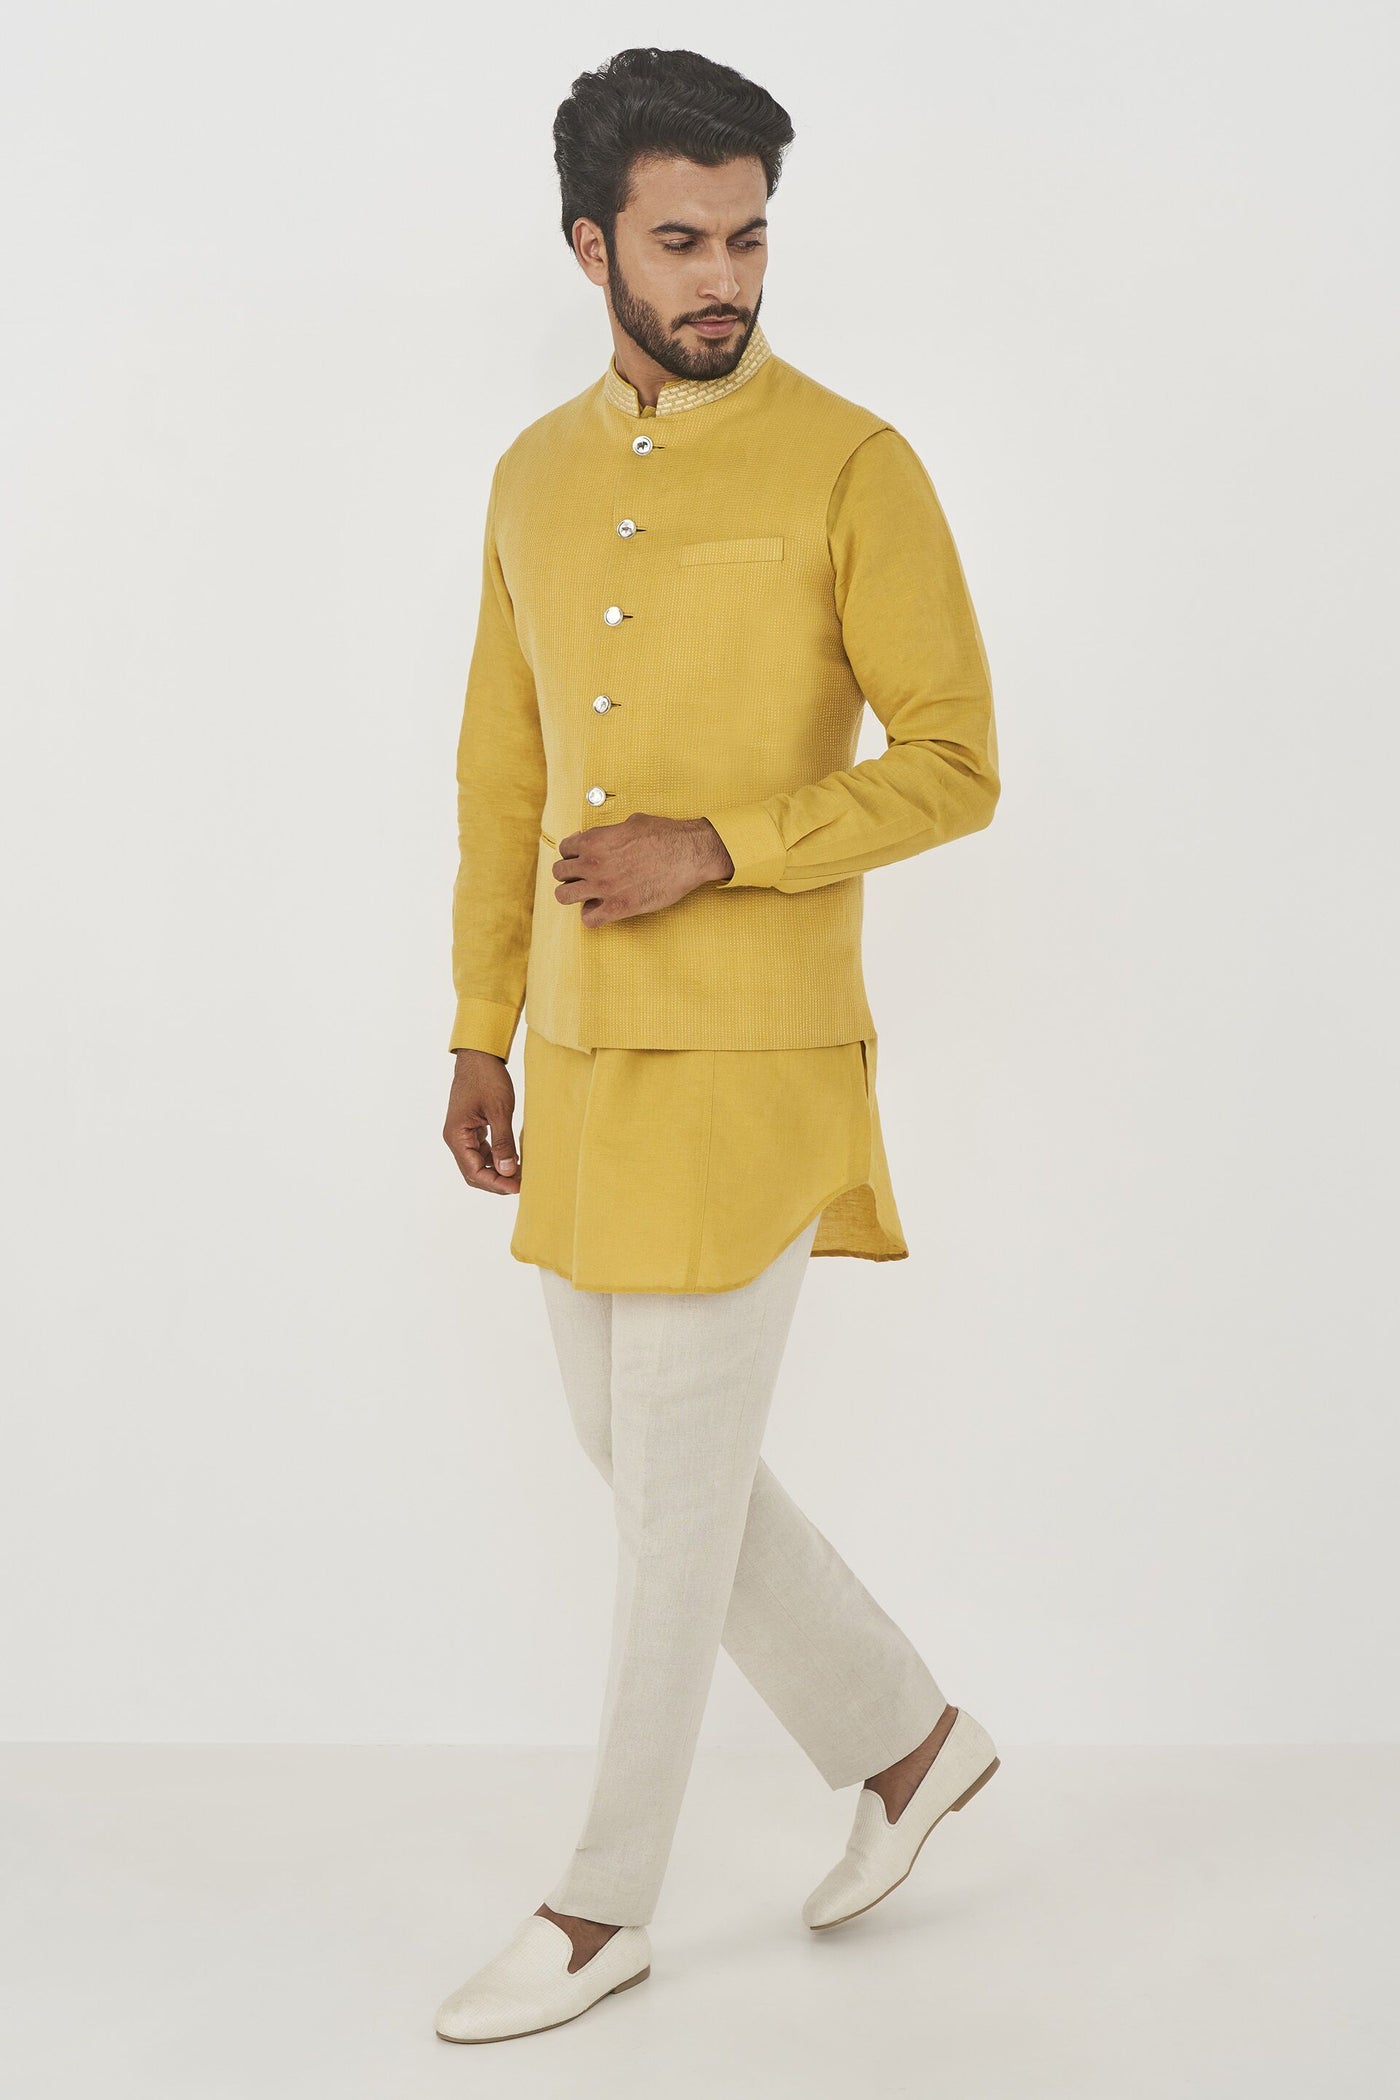  Anita Dongre menswear Aadam Bandi Yellow indian designer wear online shopping melange singapore